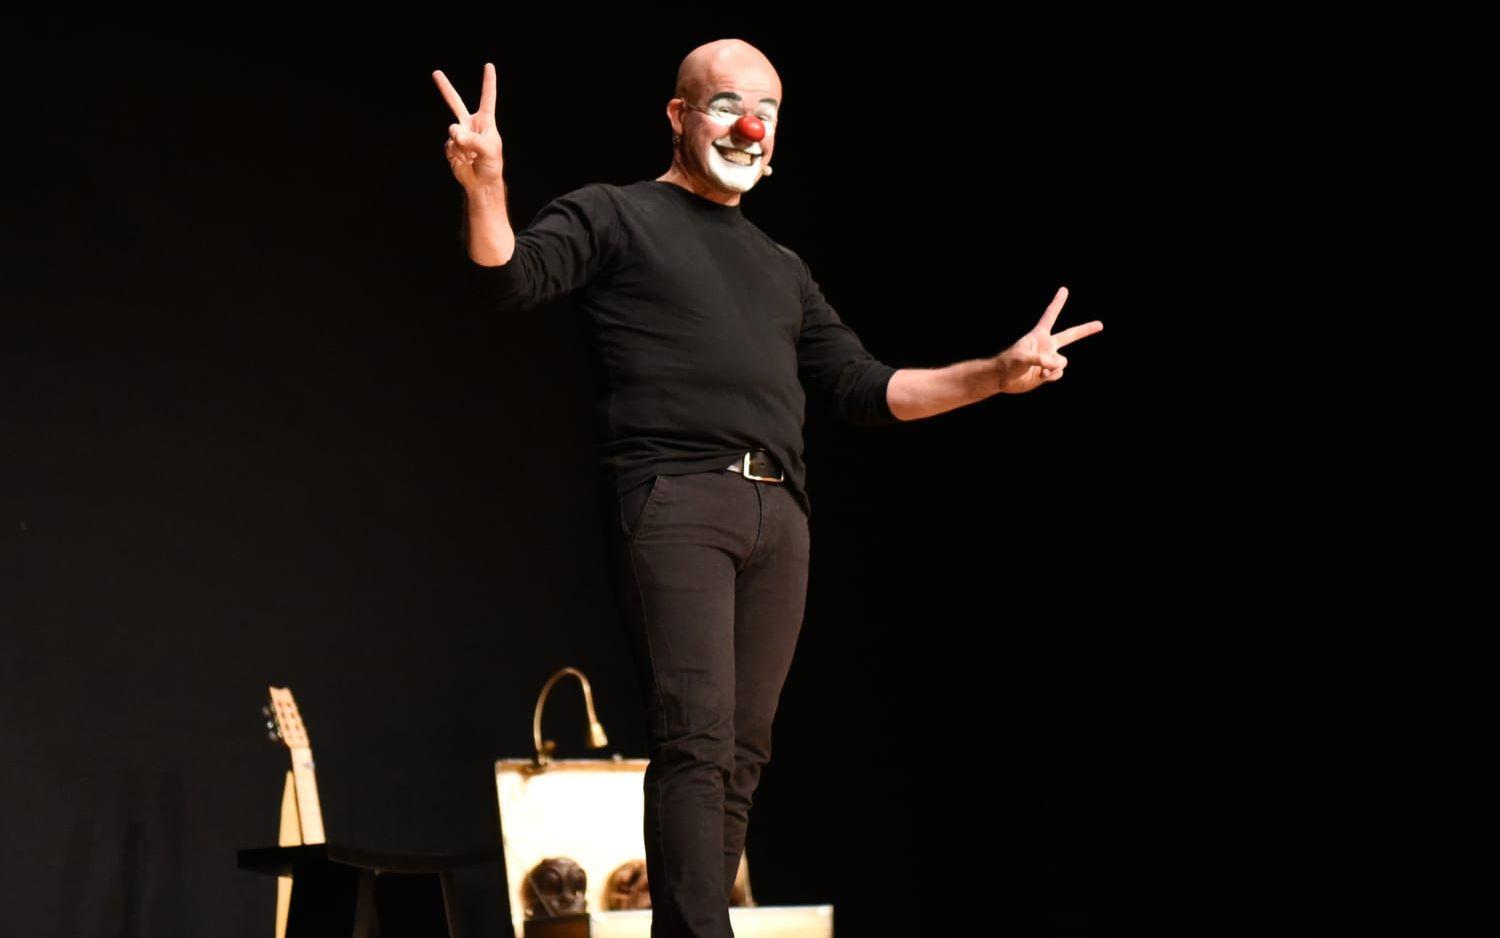 I "Molière – den absoluta sanningen" står Lasse Beischer ensam på scen i över två timmar och improviserar mycket med publiken – "ett enormt och imponerande kraftprov" enligt Hallands Nyheters recensent. Bild: Martin Erlandsson